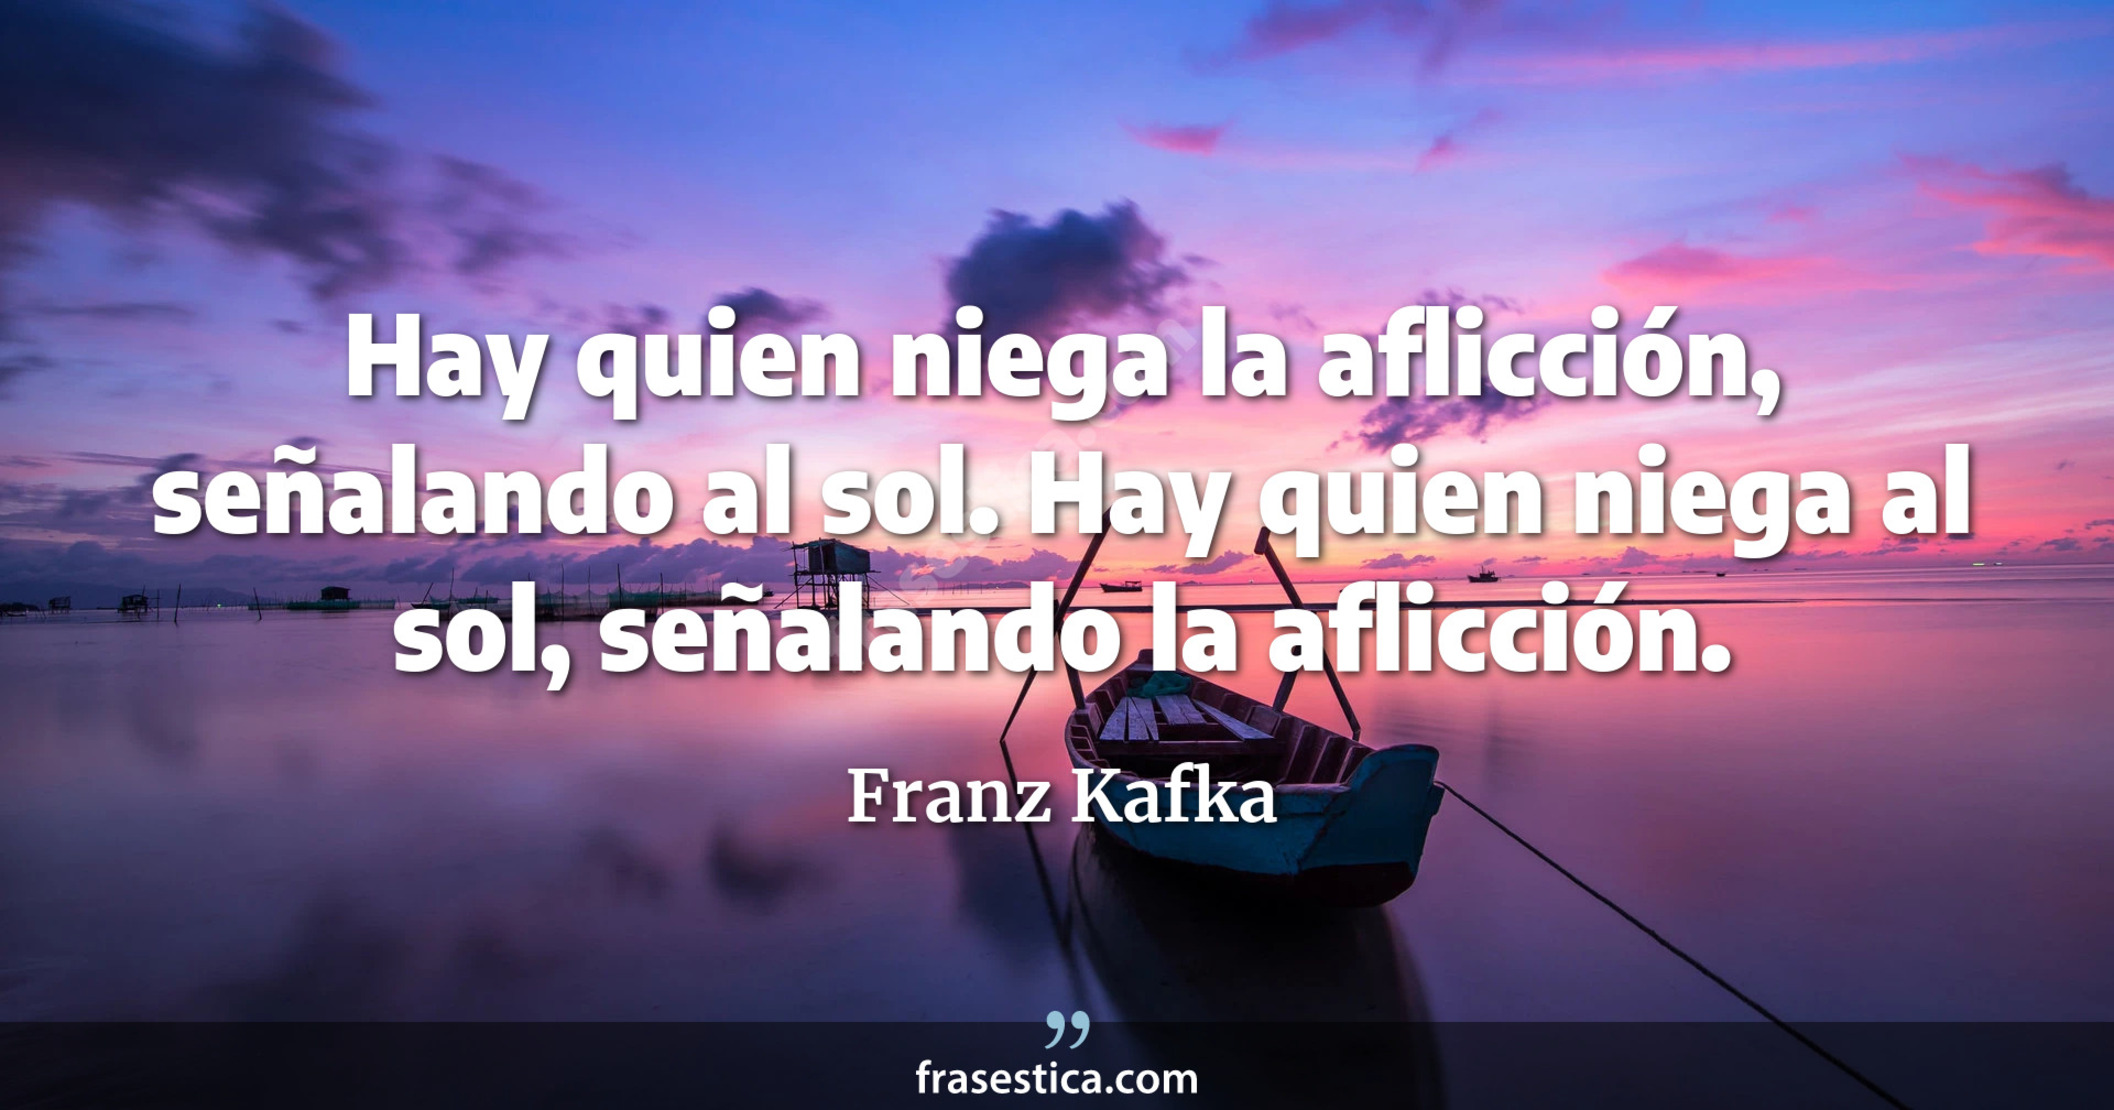 Hay quien niega la aflicción, señalando al sol. Hay quien niega al sol, señalando la aflicción. - Franz Kafka